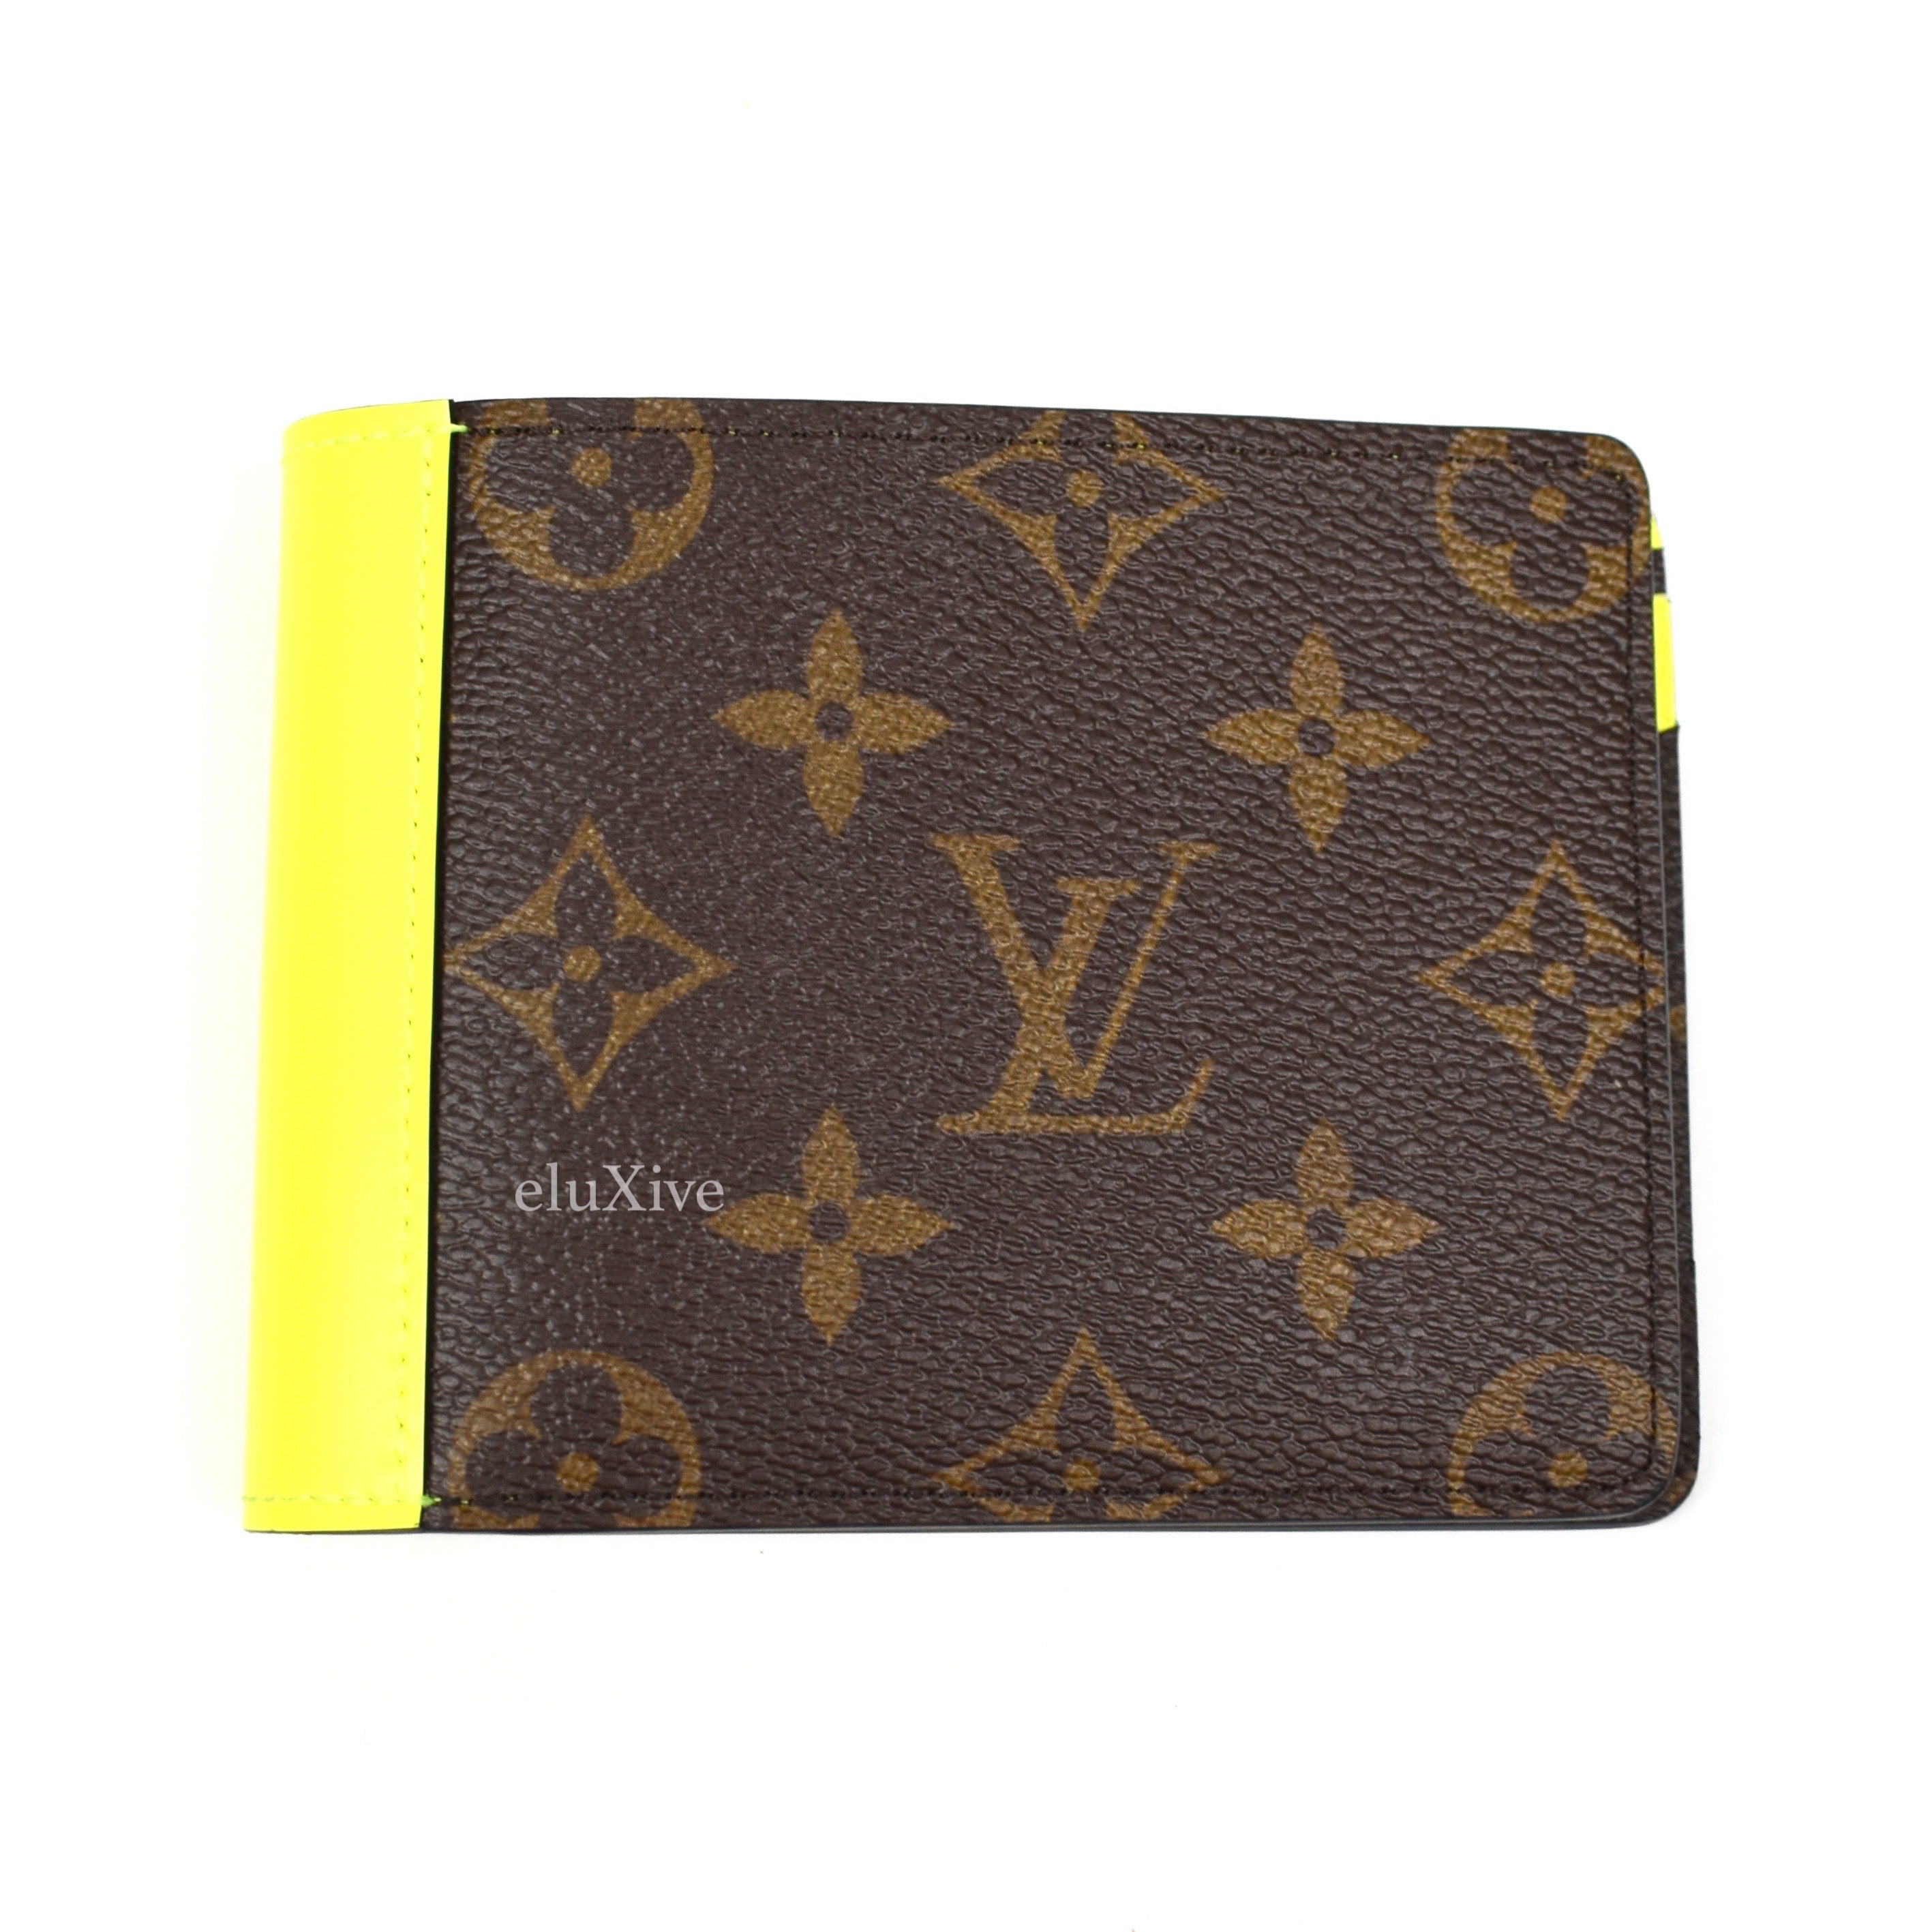 Louis Vuitton Multiple Taïgarama Wallet w/ Tags